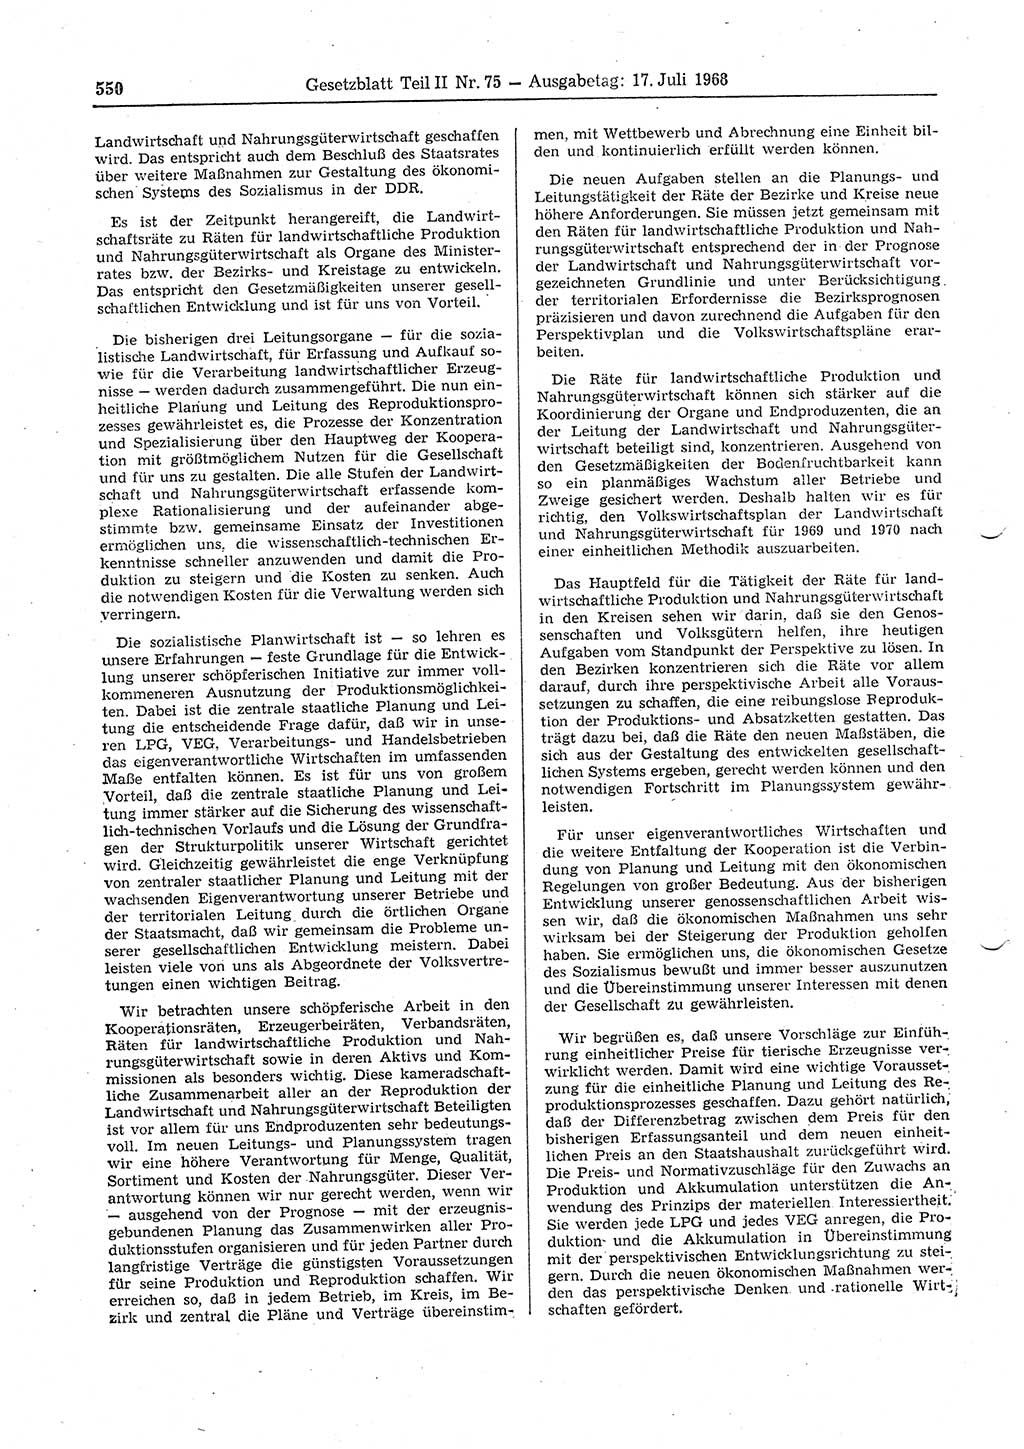 Gesetzblatt (GBl.) der Deutschen Demokratischen Republik (DDR) Teil ⅠⅠ 1968, Seite 550 (GBl. DDR ⅠⅠ 1968, S. 550)